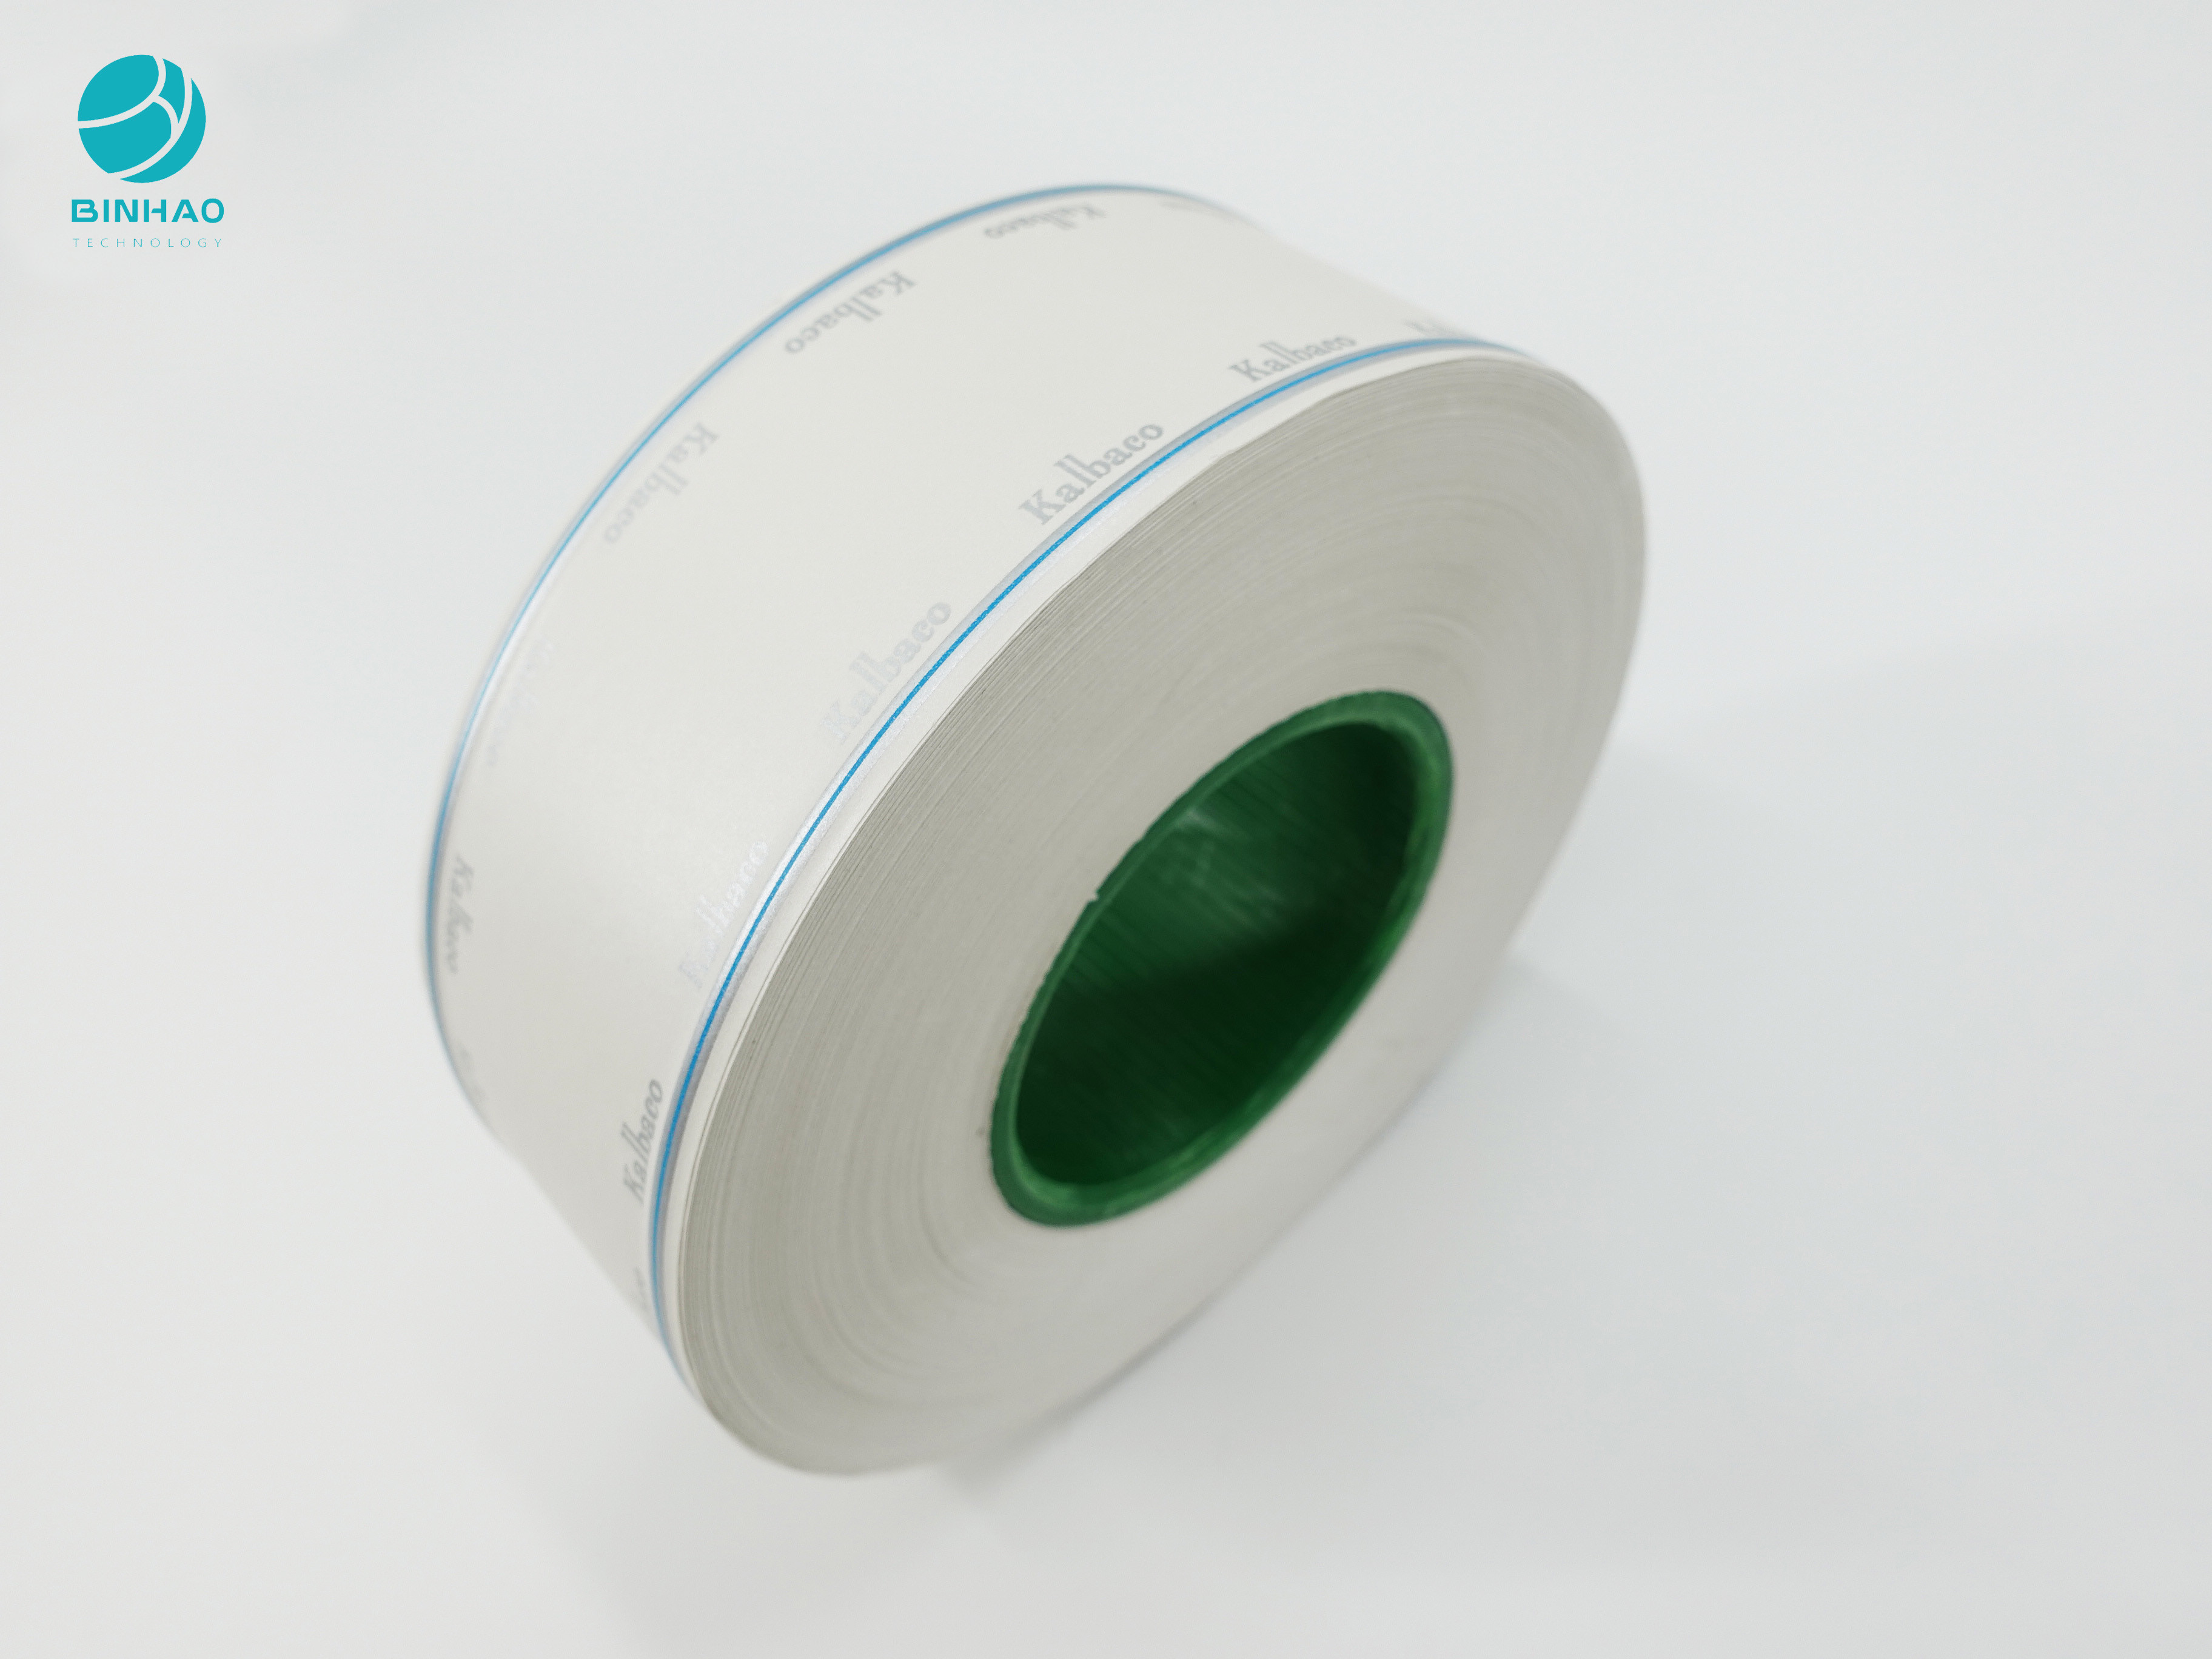 50-64mm fertigten das Spitzen des Papierzigaretten-Paket-Filters Rod Wrapping besonders an